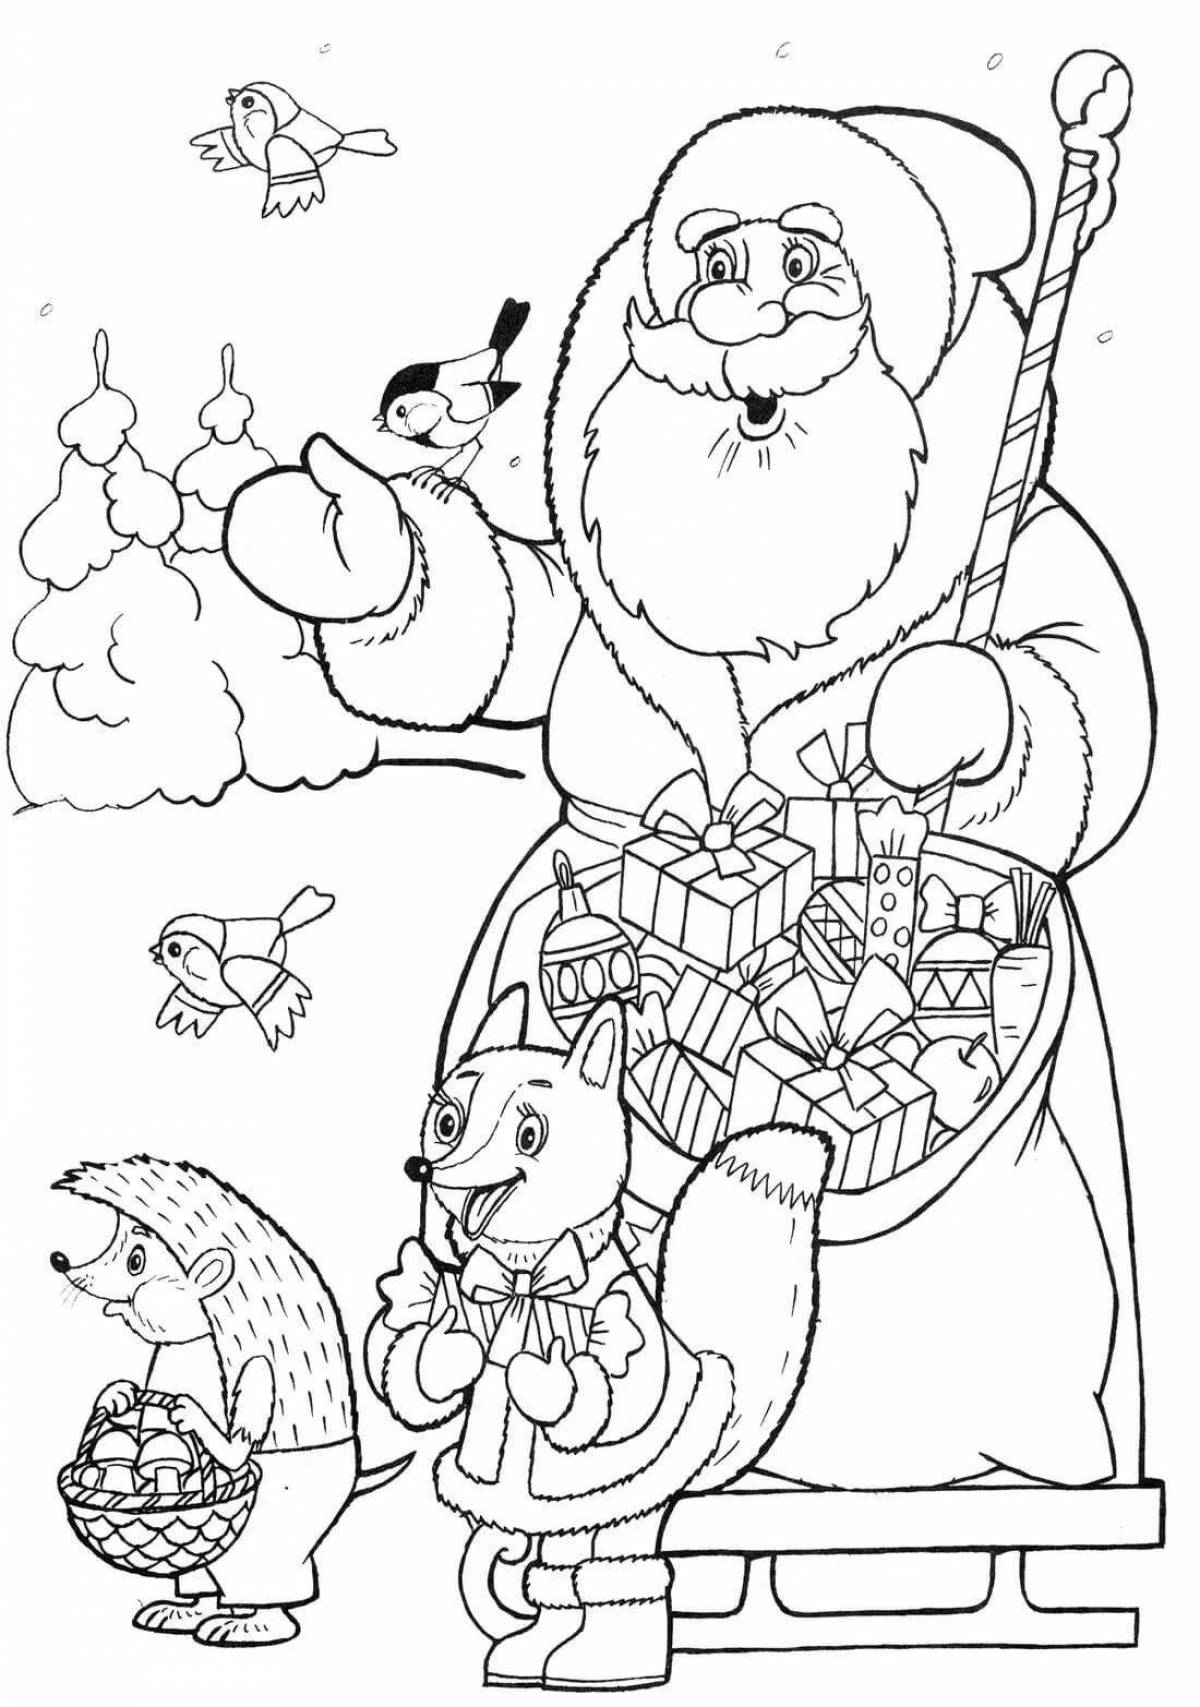 Charming santa claus and bunny coloring book